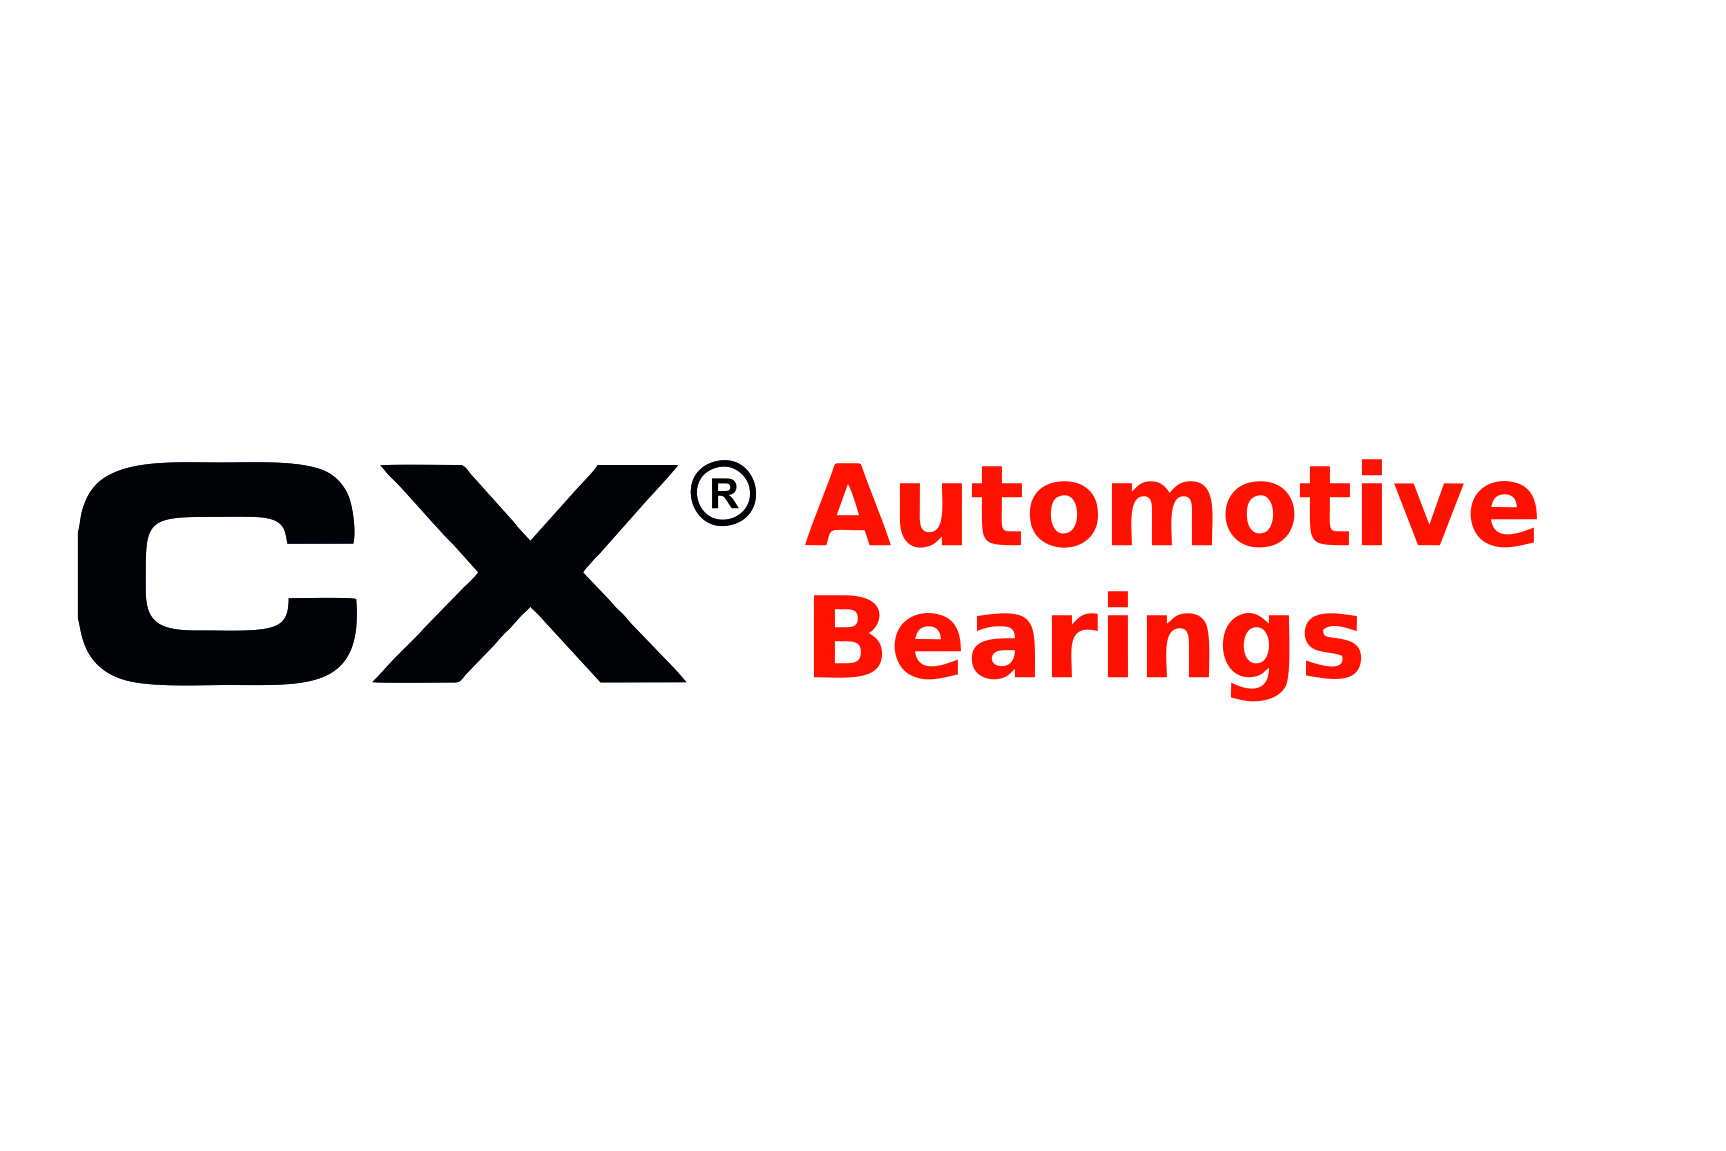 Automotive Bearings 4x6